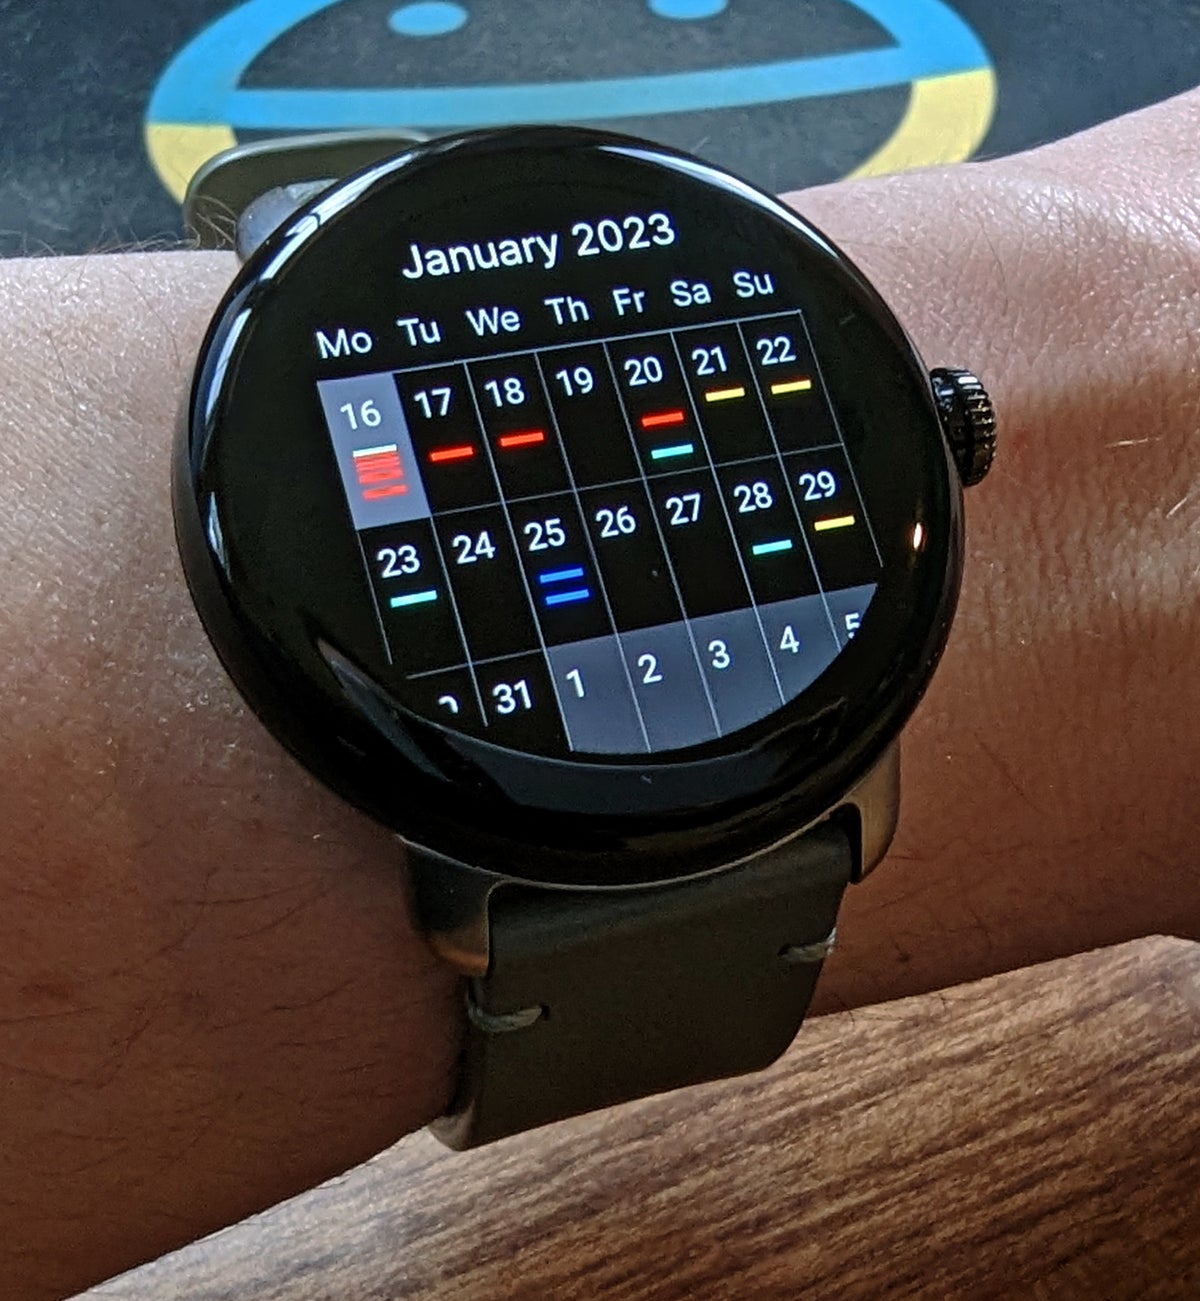 a-colossal-wear-os-calendar-upgrade-google-pixel-watch-and-beyond-computerworld